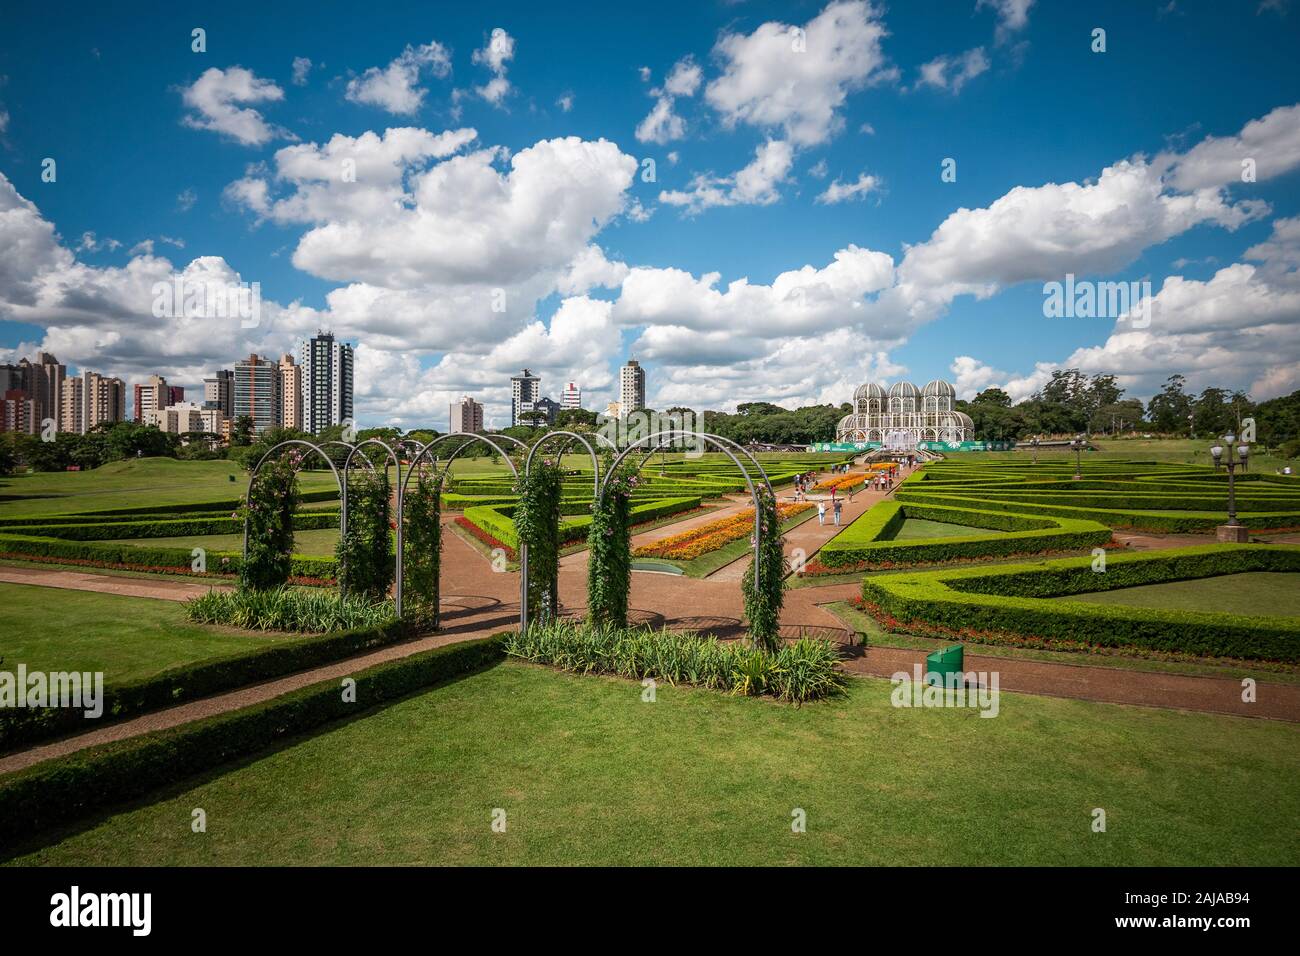 Jardins botaniques de Curitiba sur une journée ensoleillée à Curitiba, la capitale et la plus grande ville dans l'État de Parana, Brésil. Banque D'Images